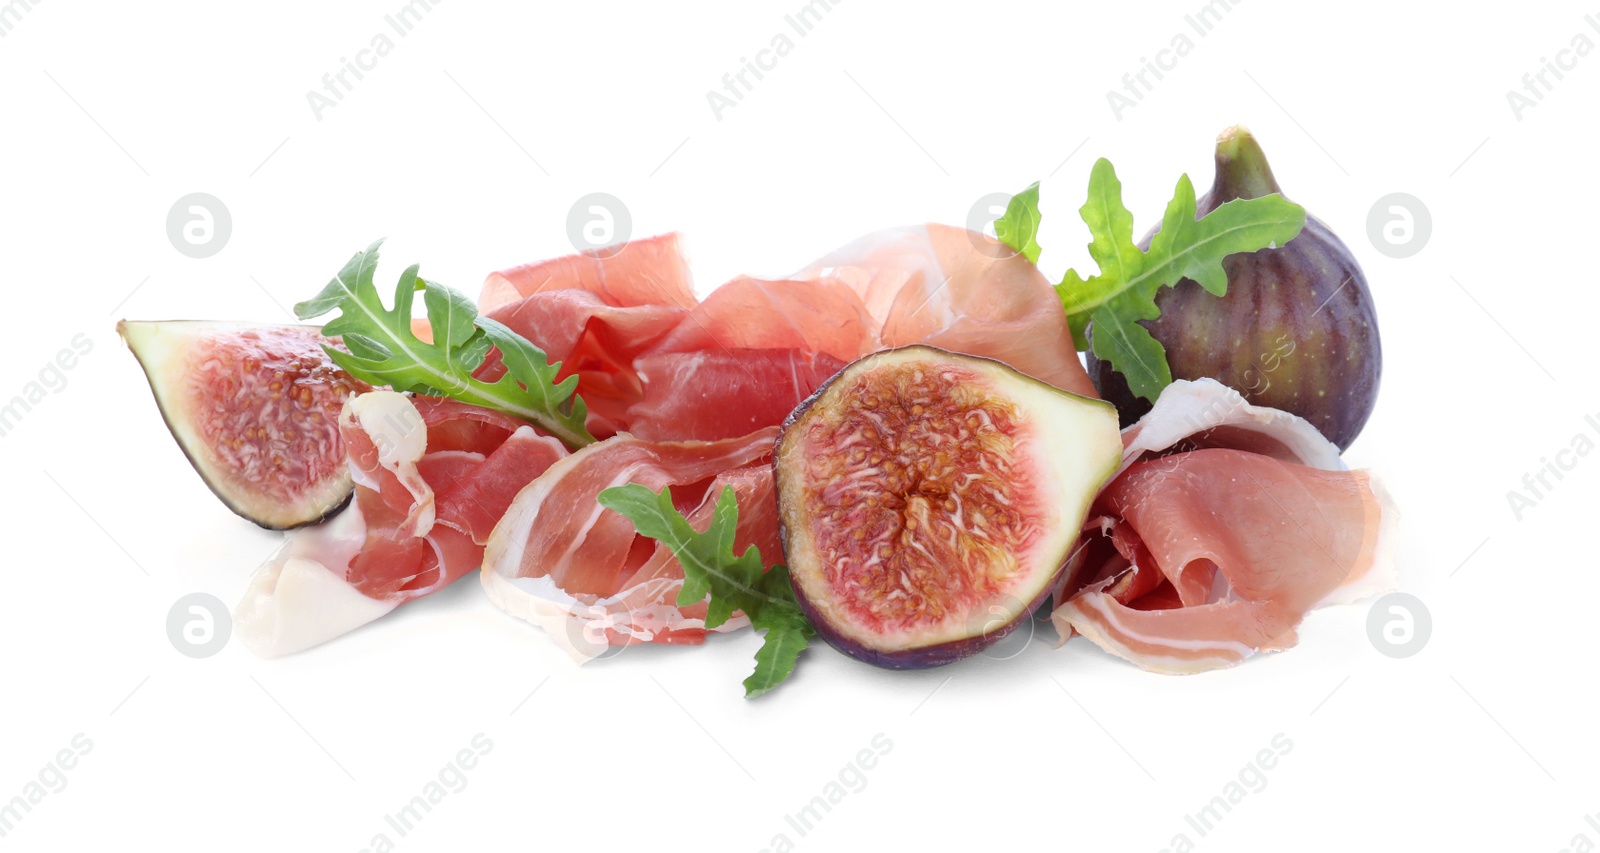 Photo of Delicious ripe figs, prosciutto and arugula on white background